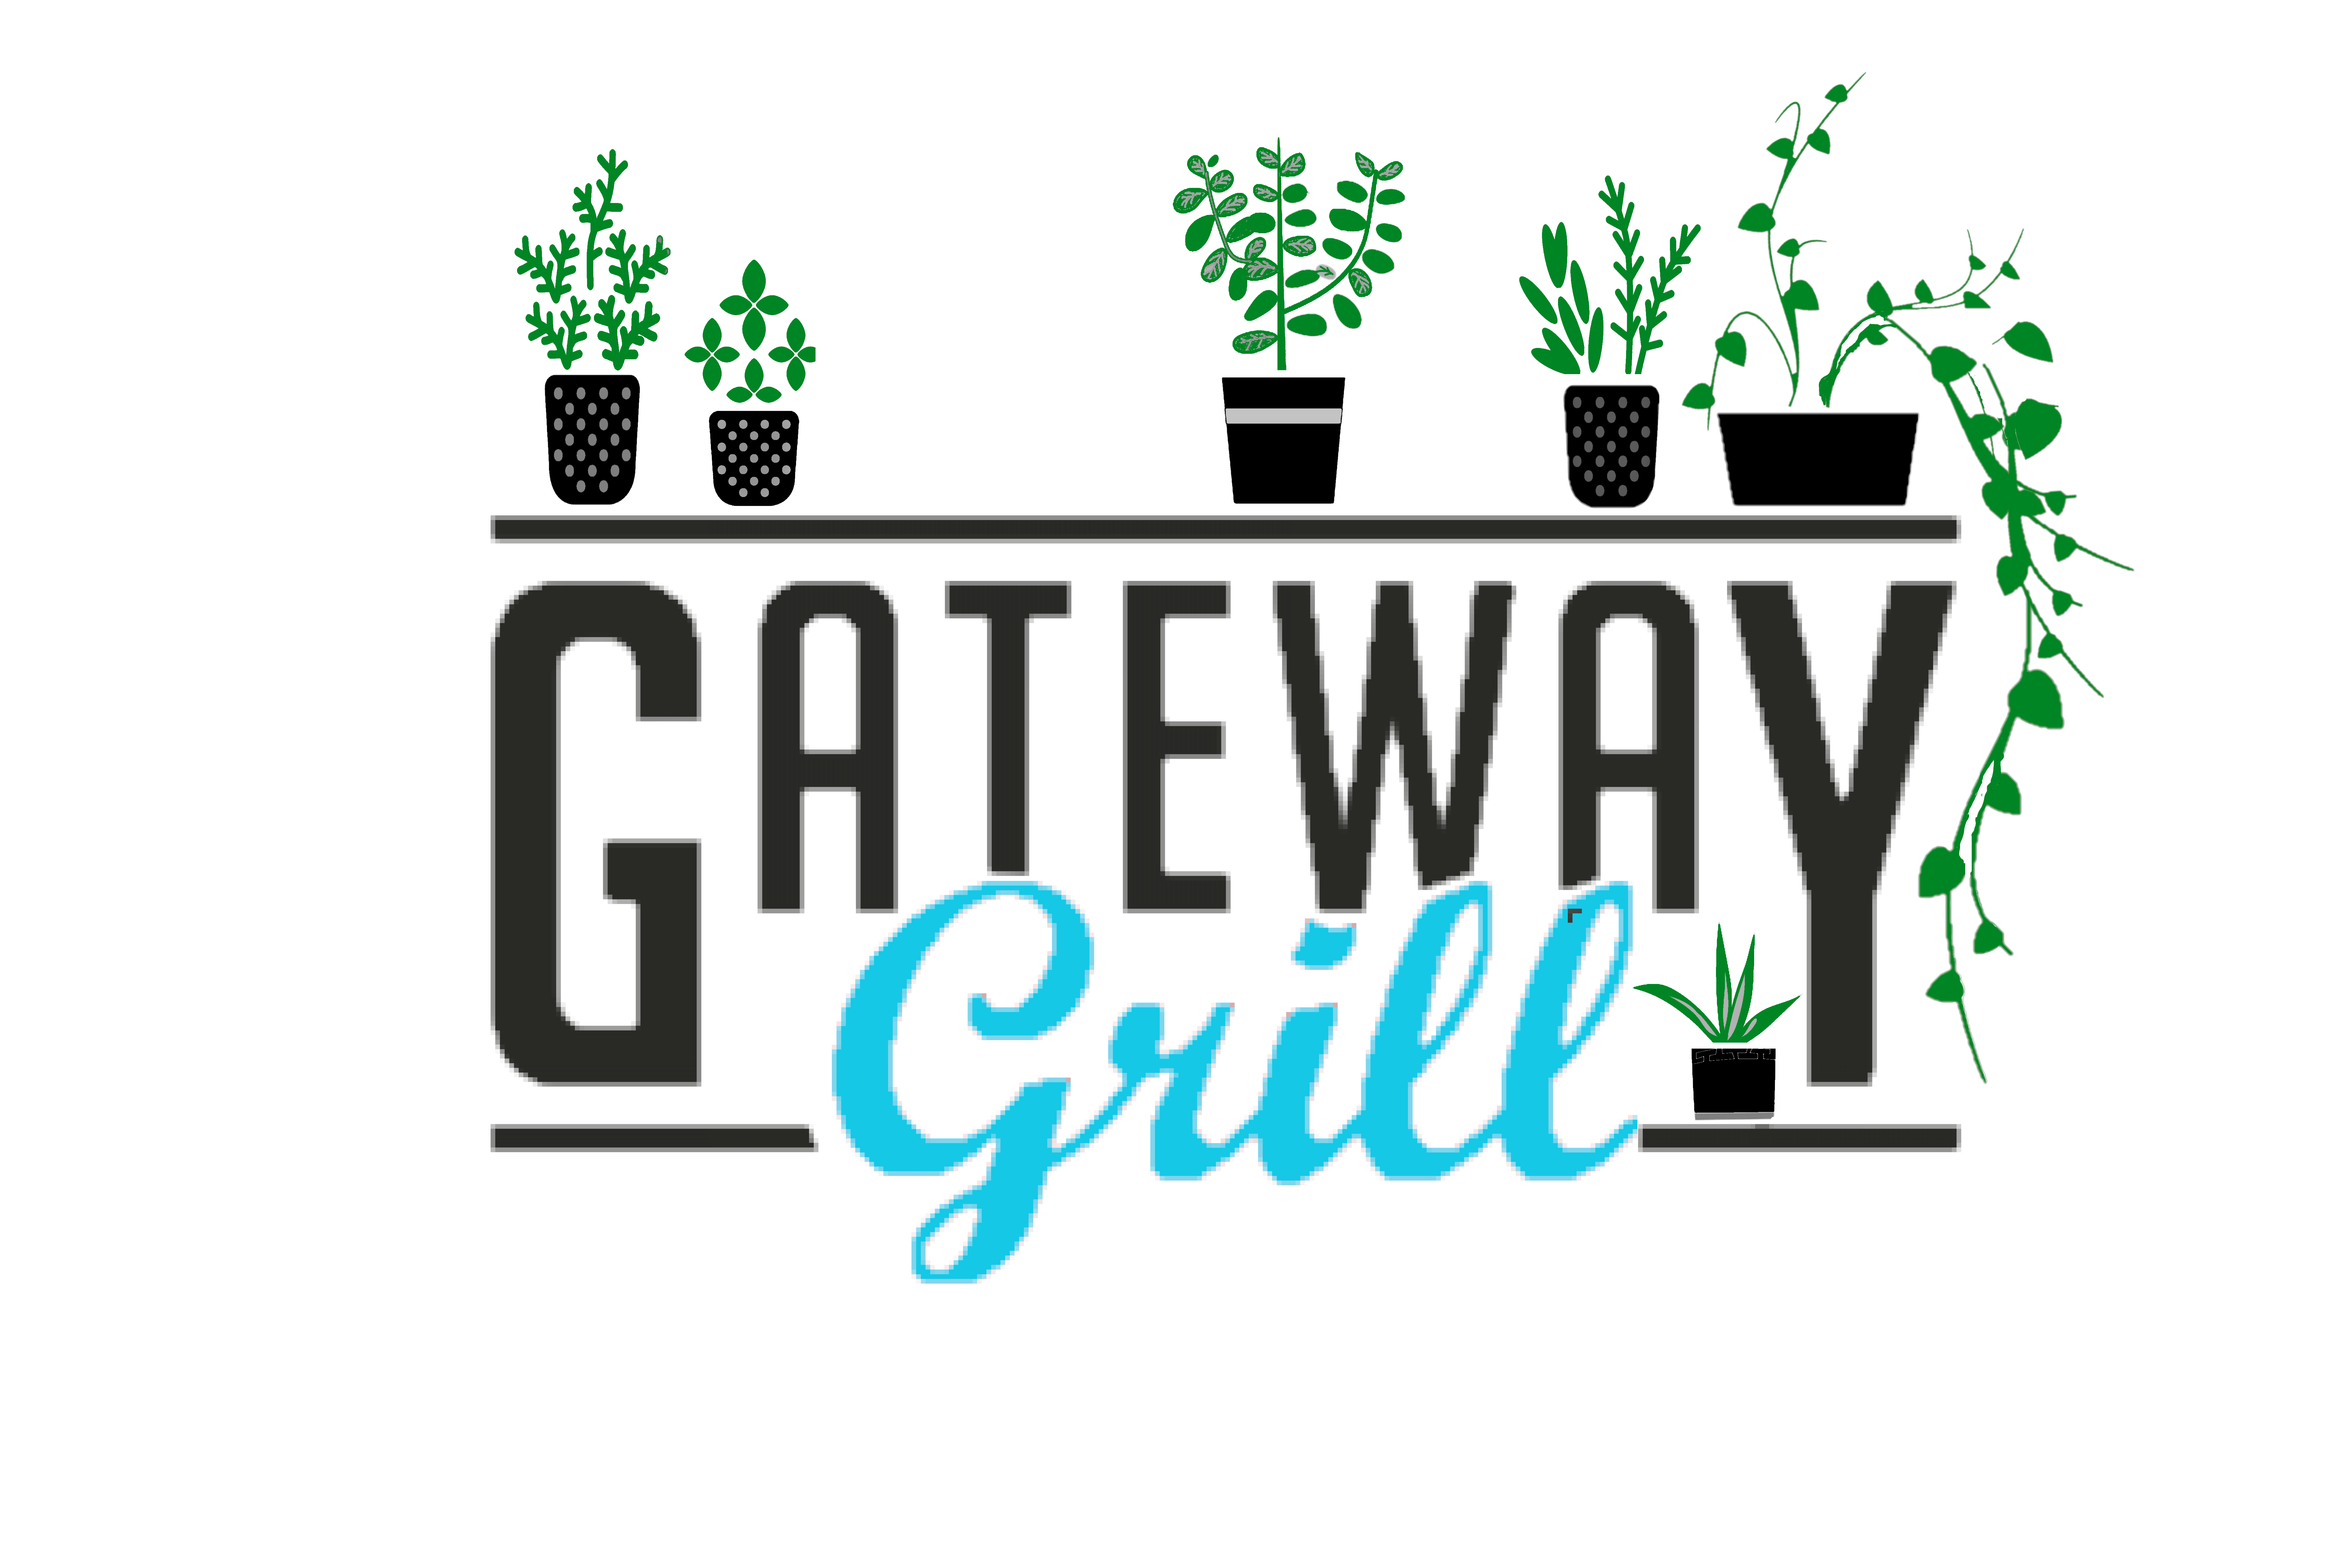 Gateway Grill